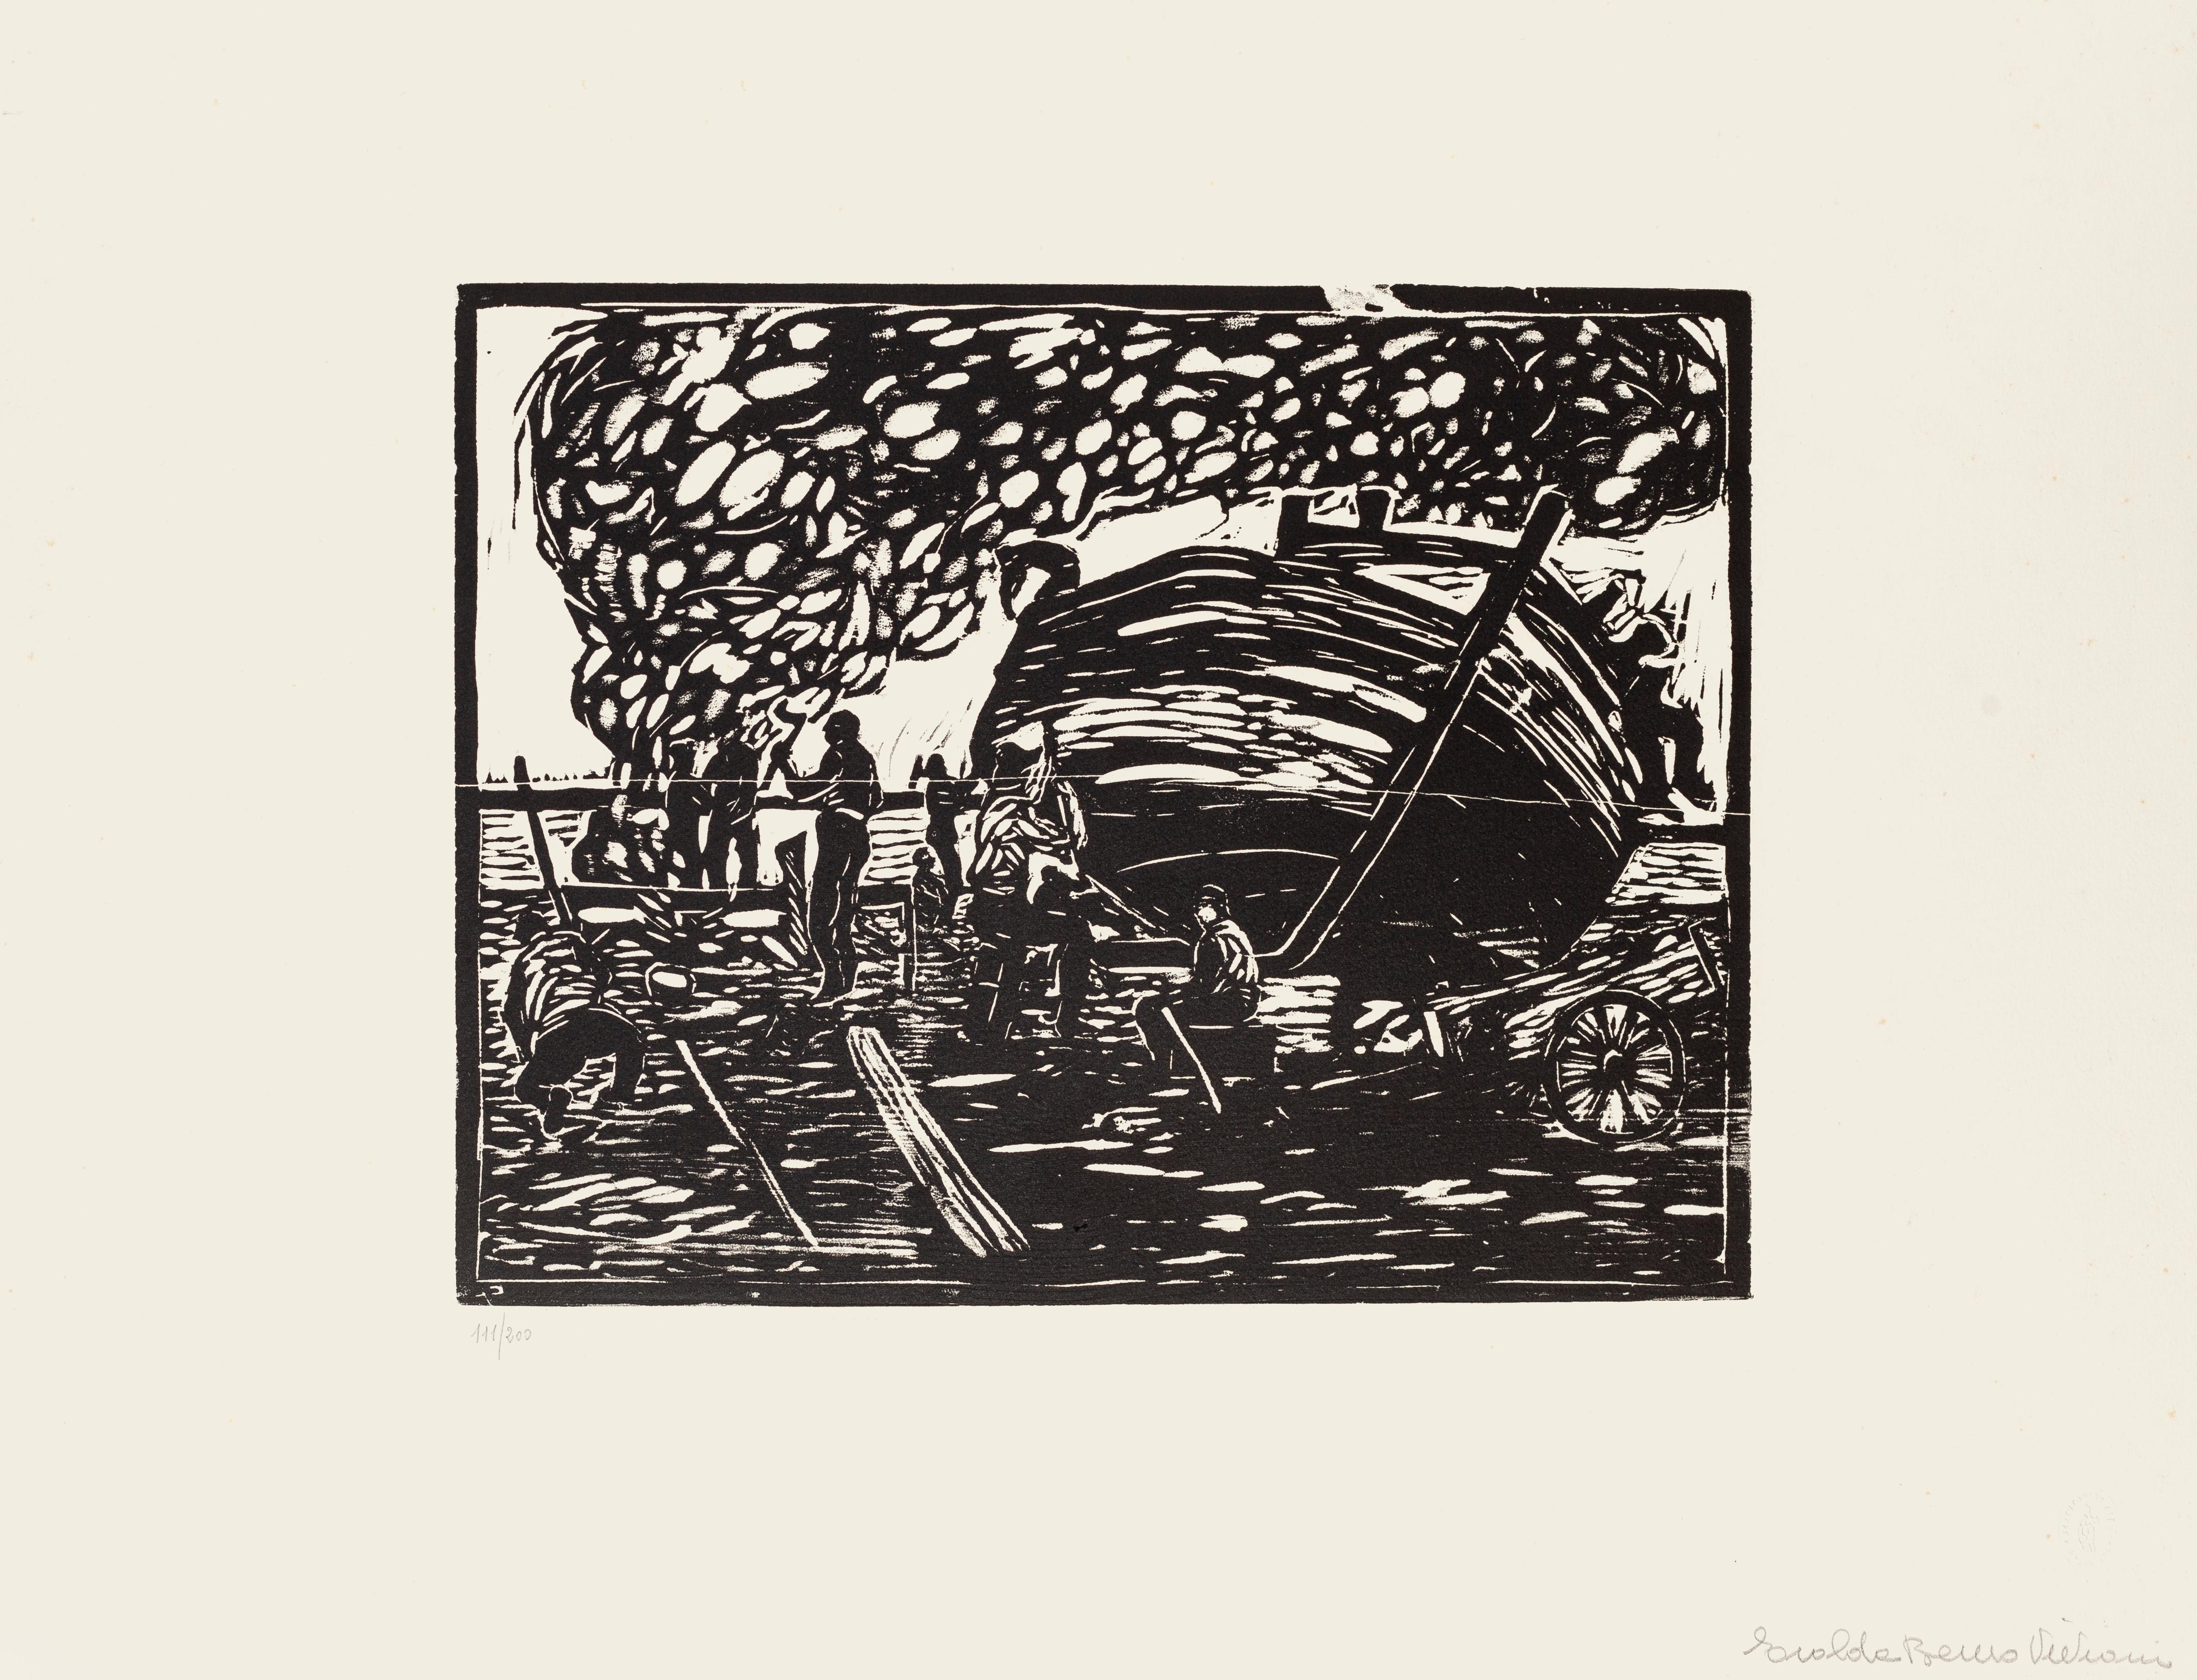 Workers on the Seaside – Holzschnitt von Giuseppe Viviani – 1926